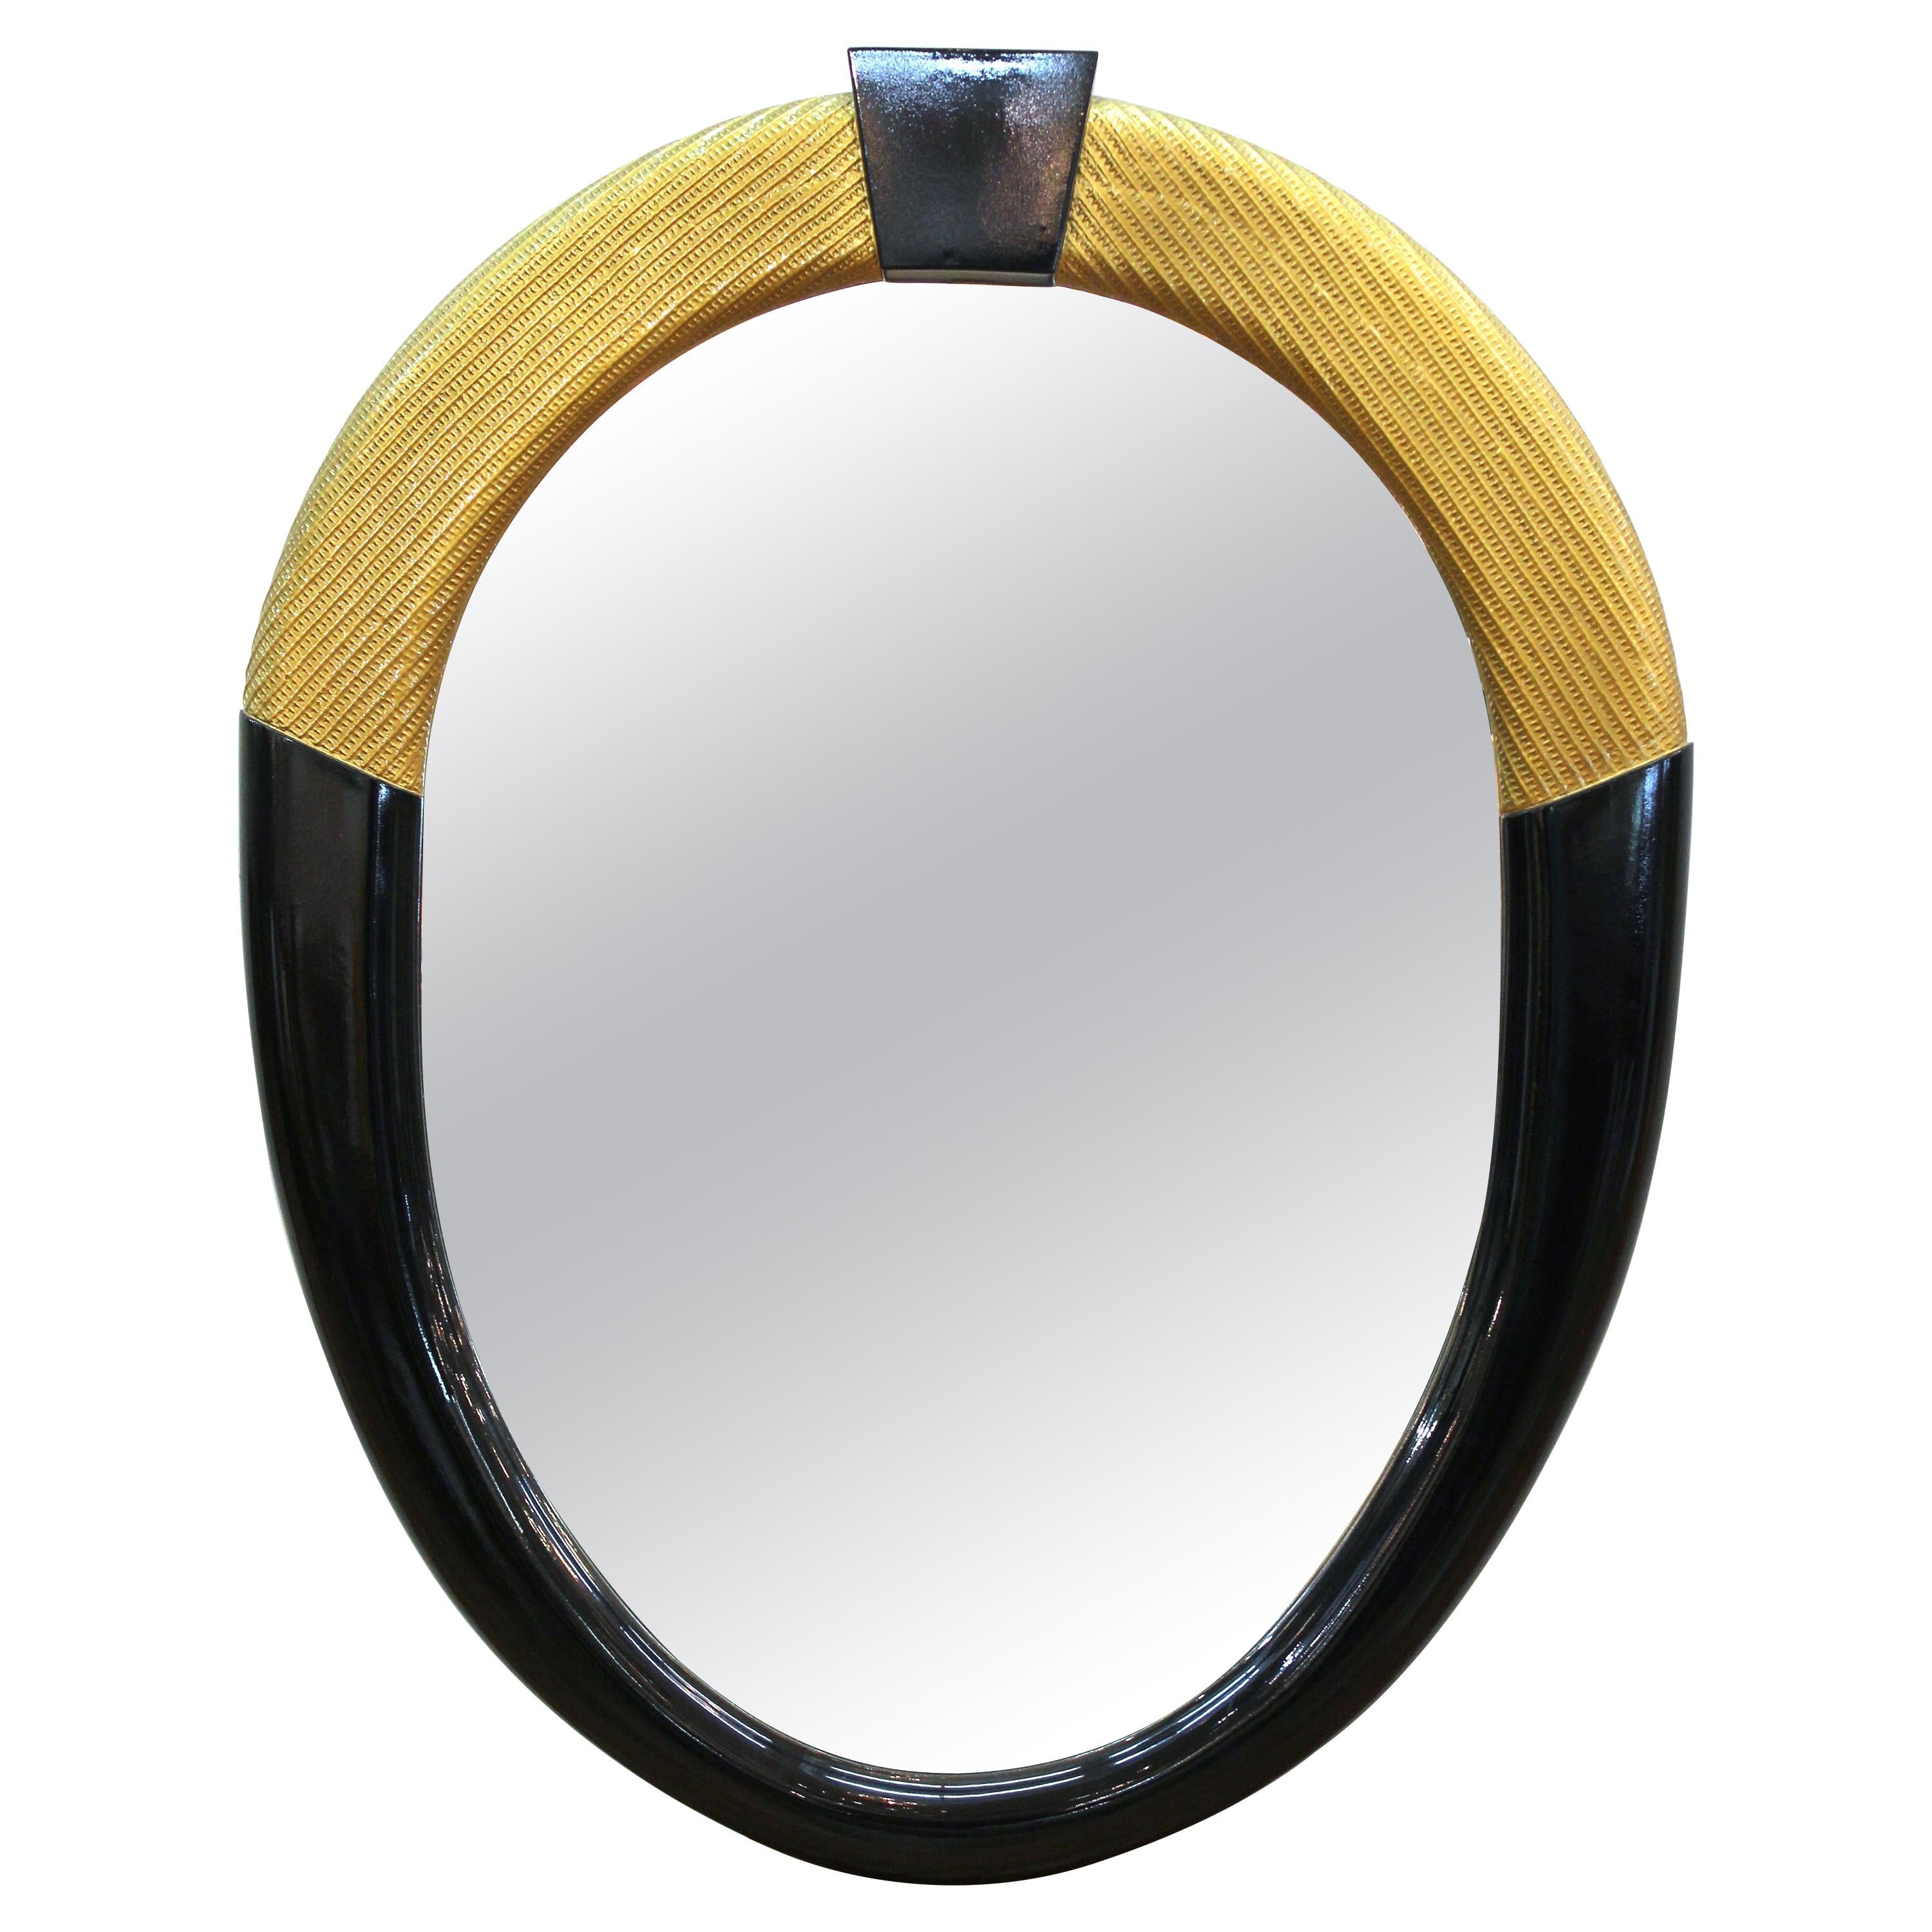 Gampel-Stoll Mid-Century Modern Style Mirror